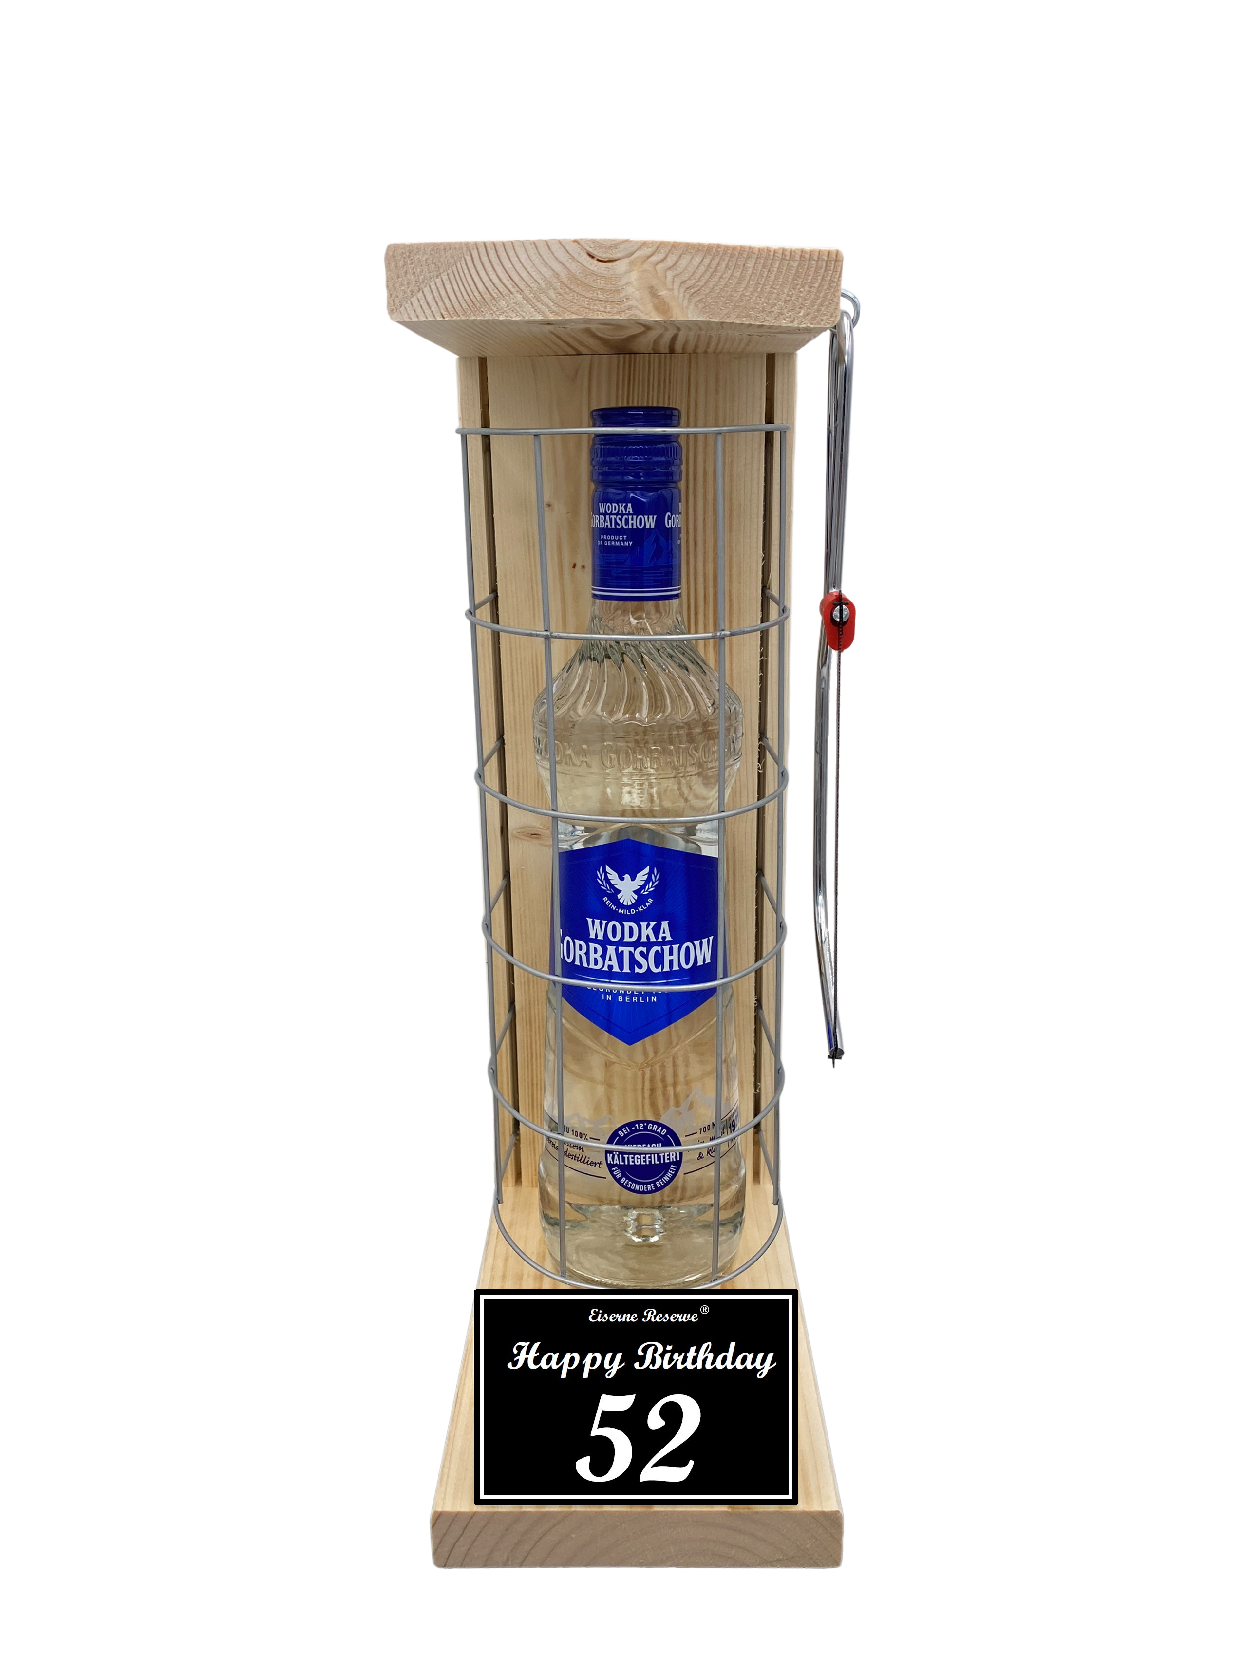 Wodka Geschenk zum 52 Geburtstag - Eiserne Reserve Gitterkäfig